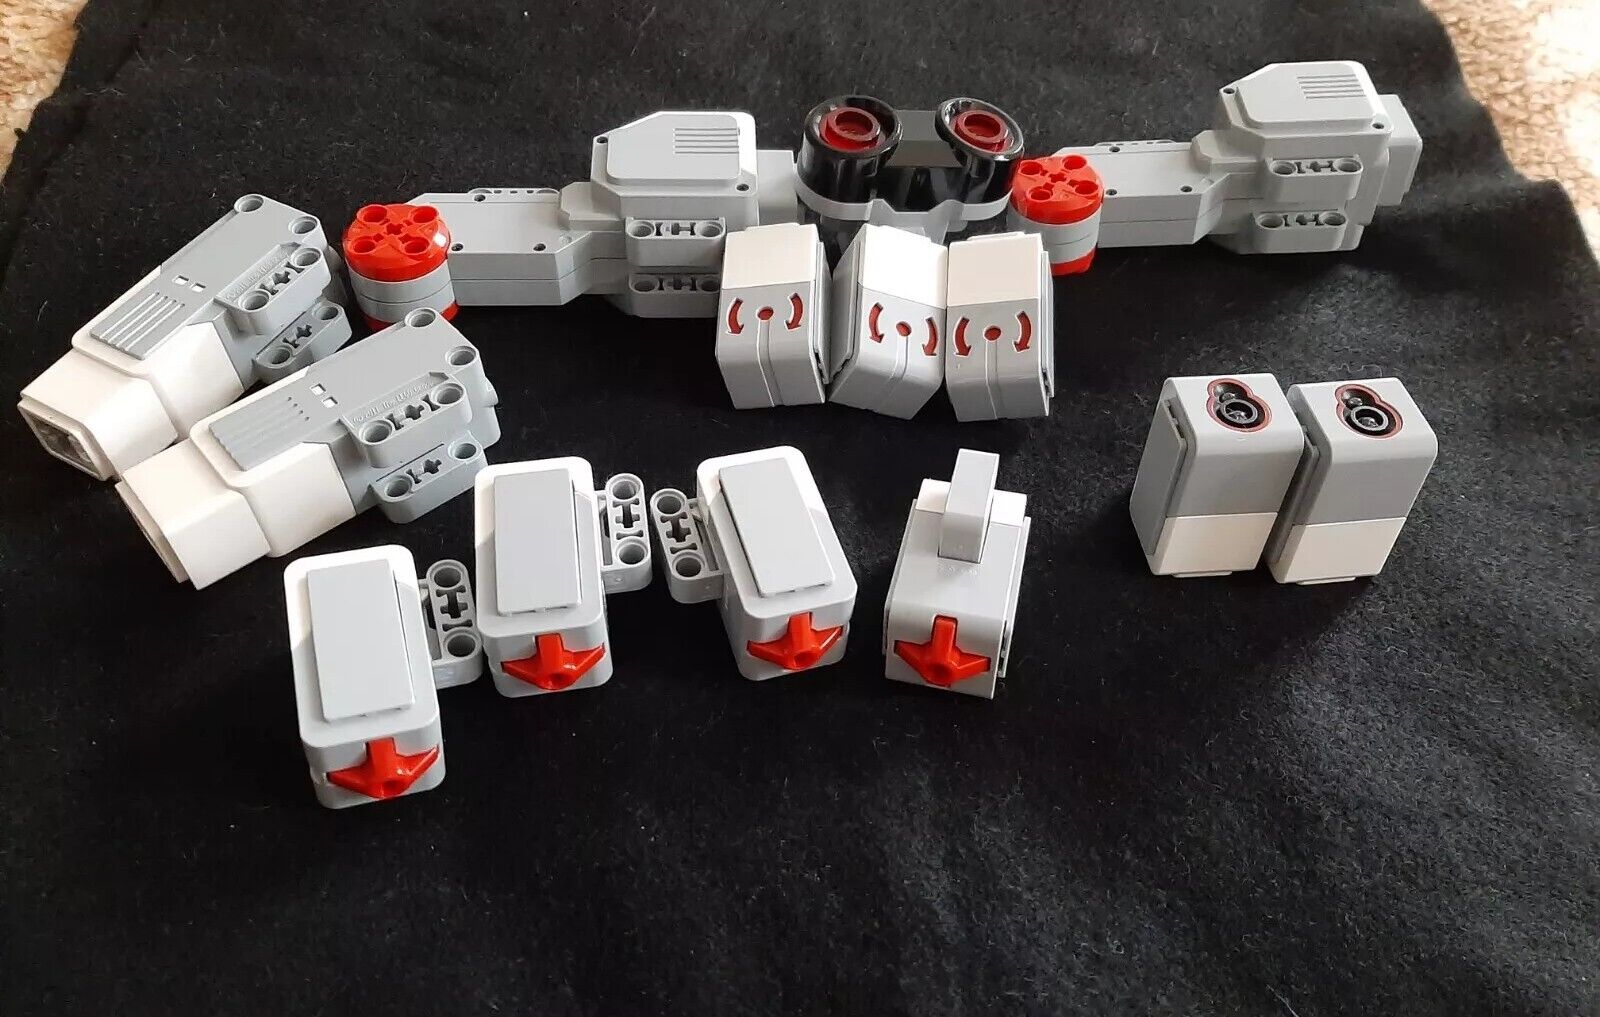 LEGO MINDSTORMS EV3 45544 ACCESSORIES MOTORS SENSORS WITH MANUAL